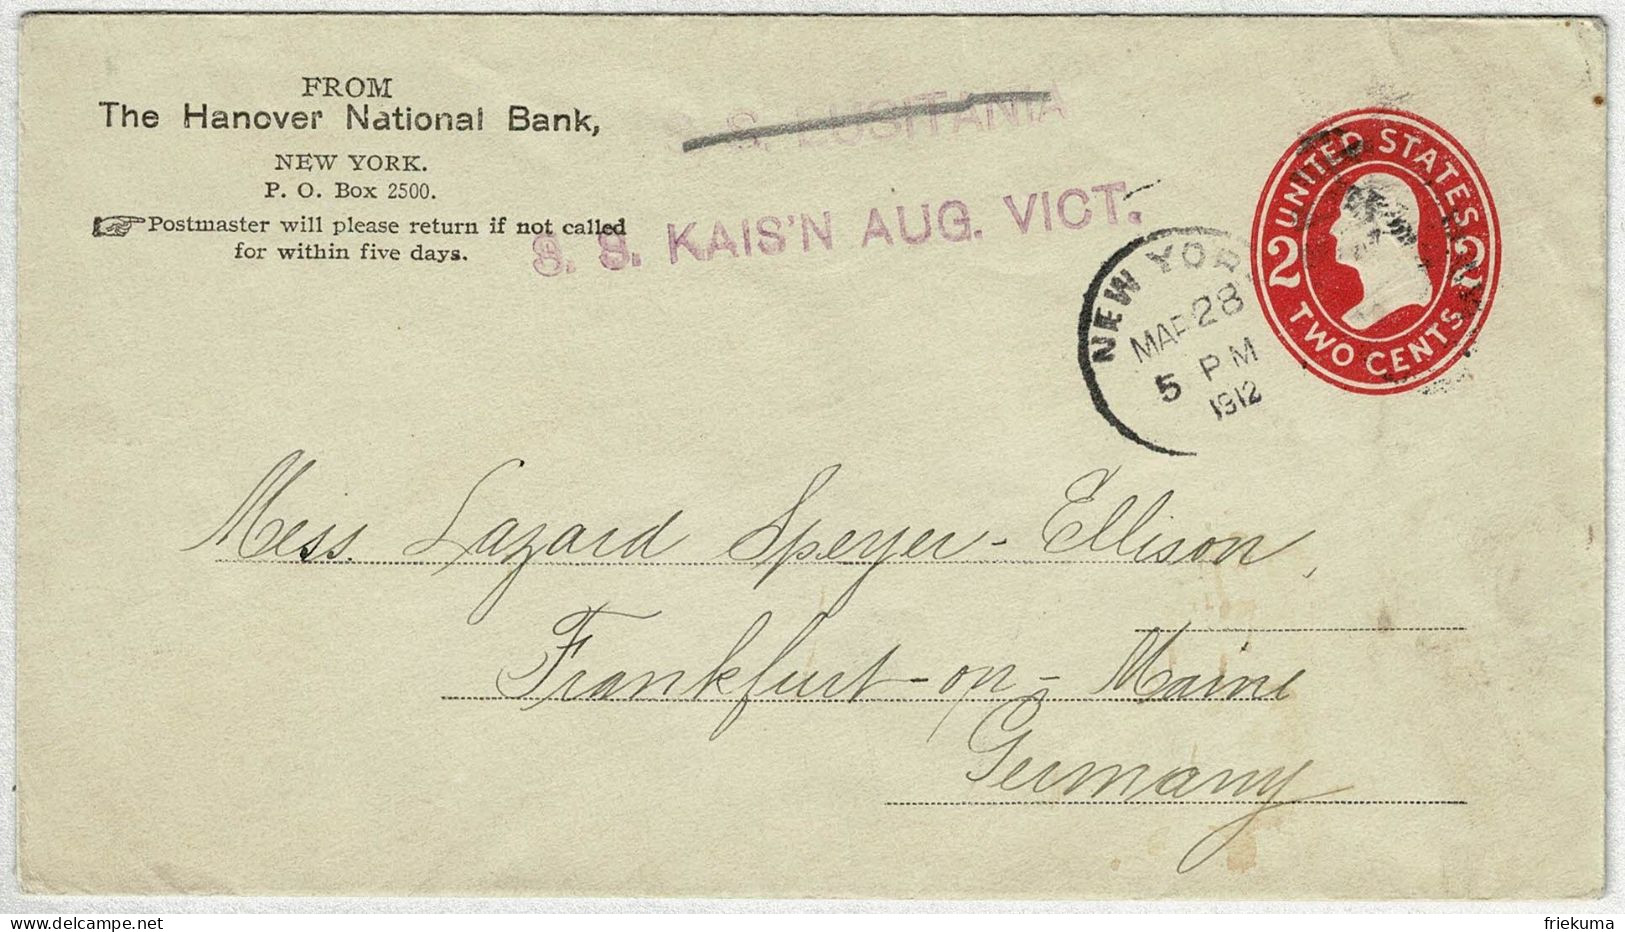 Vereinigte Staaten / USA 1912, Ganzsachen-Brief New York - Frankfurt (Deutschland), S.S. Kais'n Aug. Vict. - 1901-20